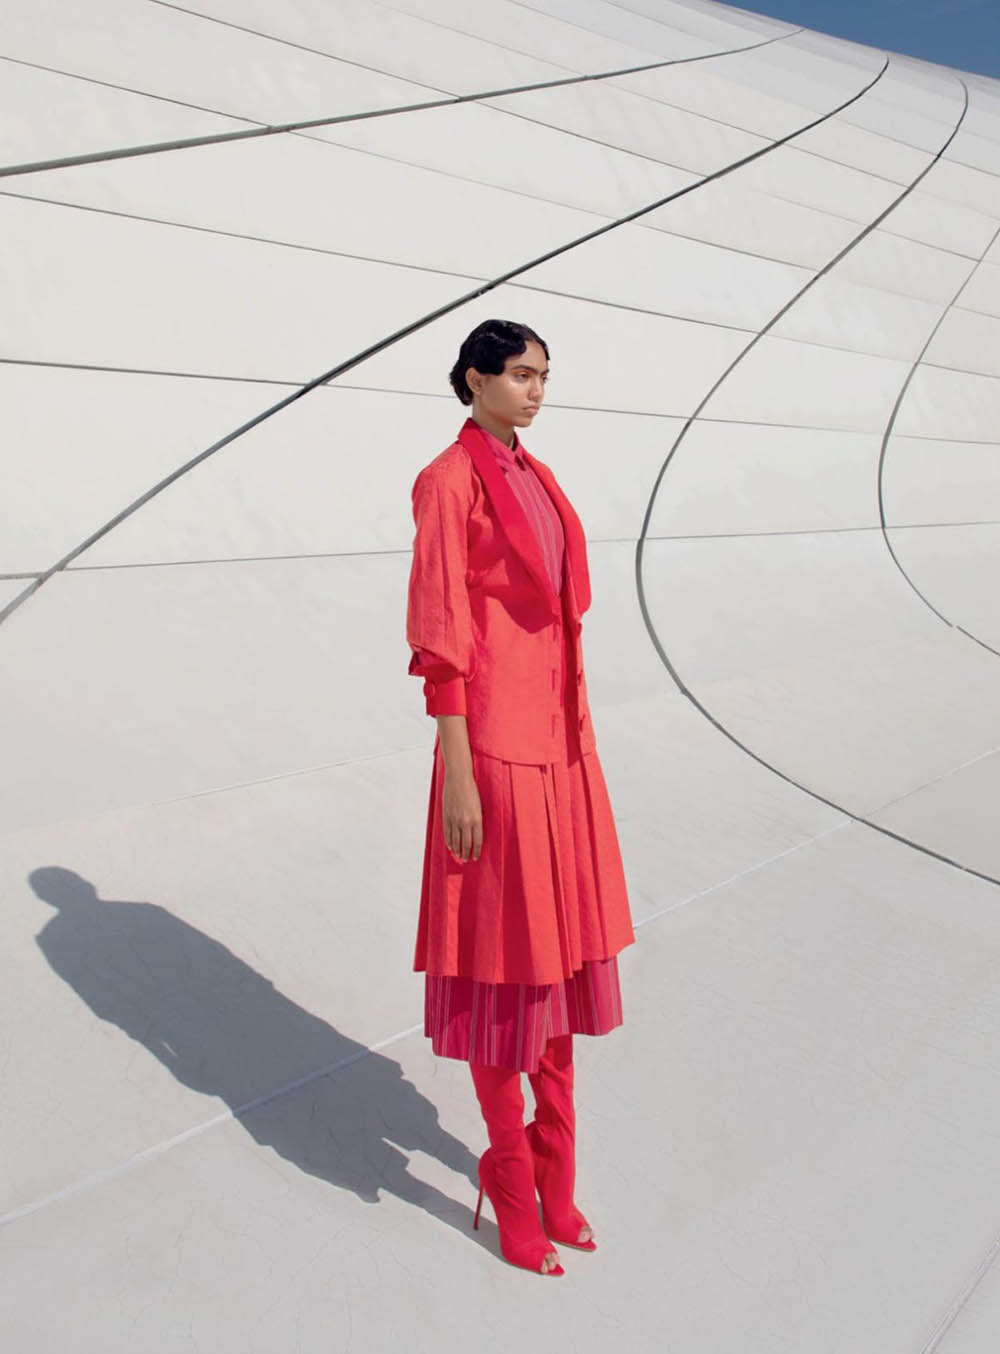 Anugraha Natarajan by Kay Sukumar for Harper’s Bazaar India January February 2020